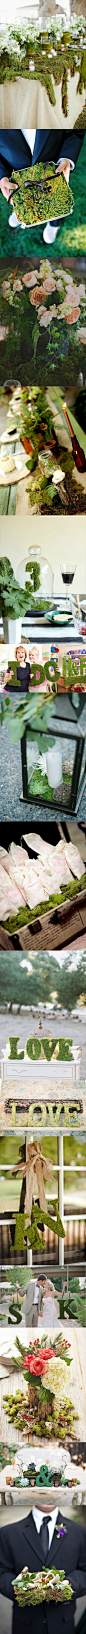 #婚礼布置#适合在春天里的12种苔藓DIY婚礼创意 更多: http://www.lovewith.me/share/detail/all/32855